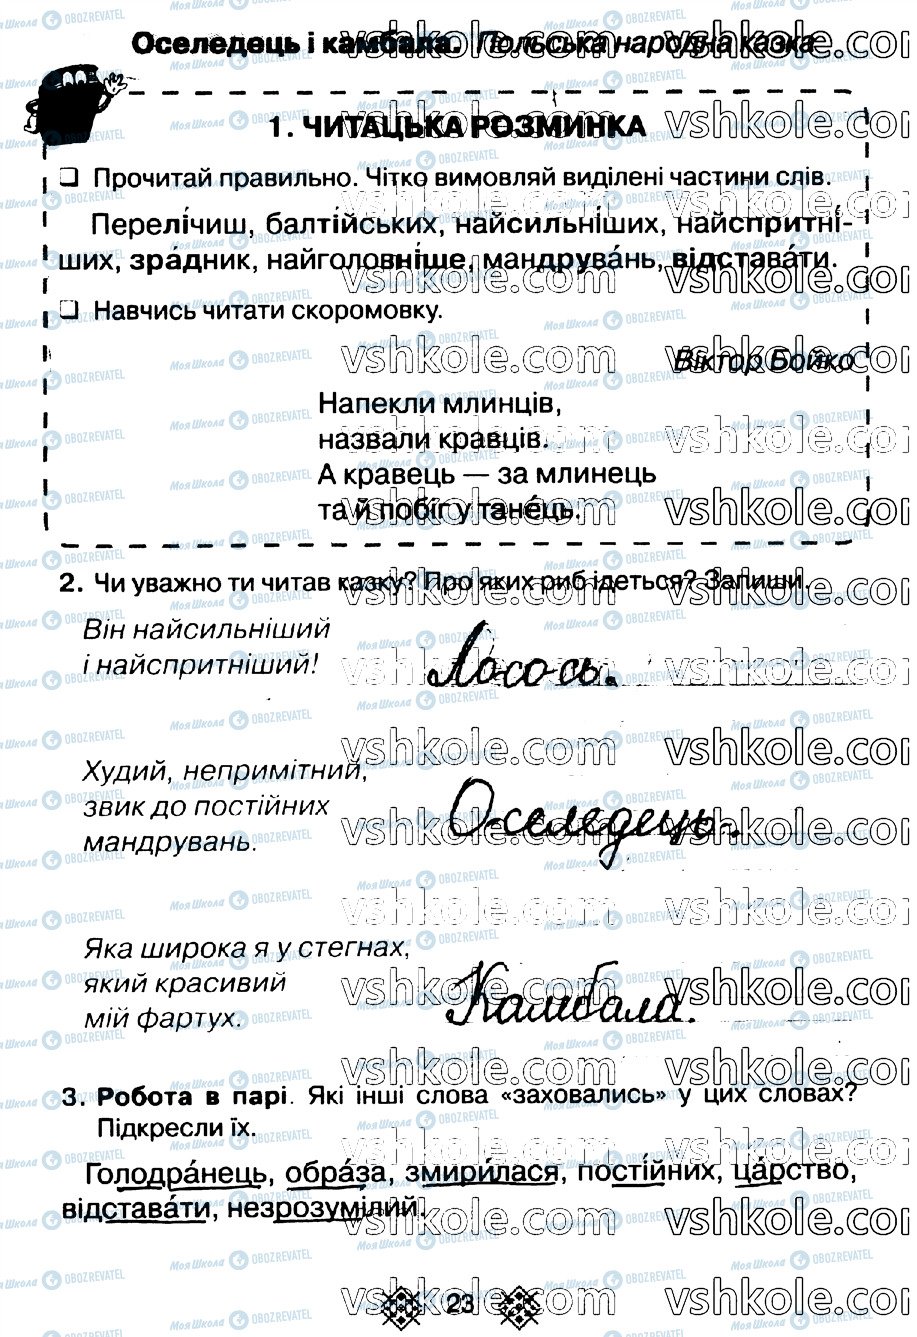 ГДЗ Укр мова 2 класс страница стр23